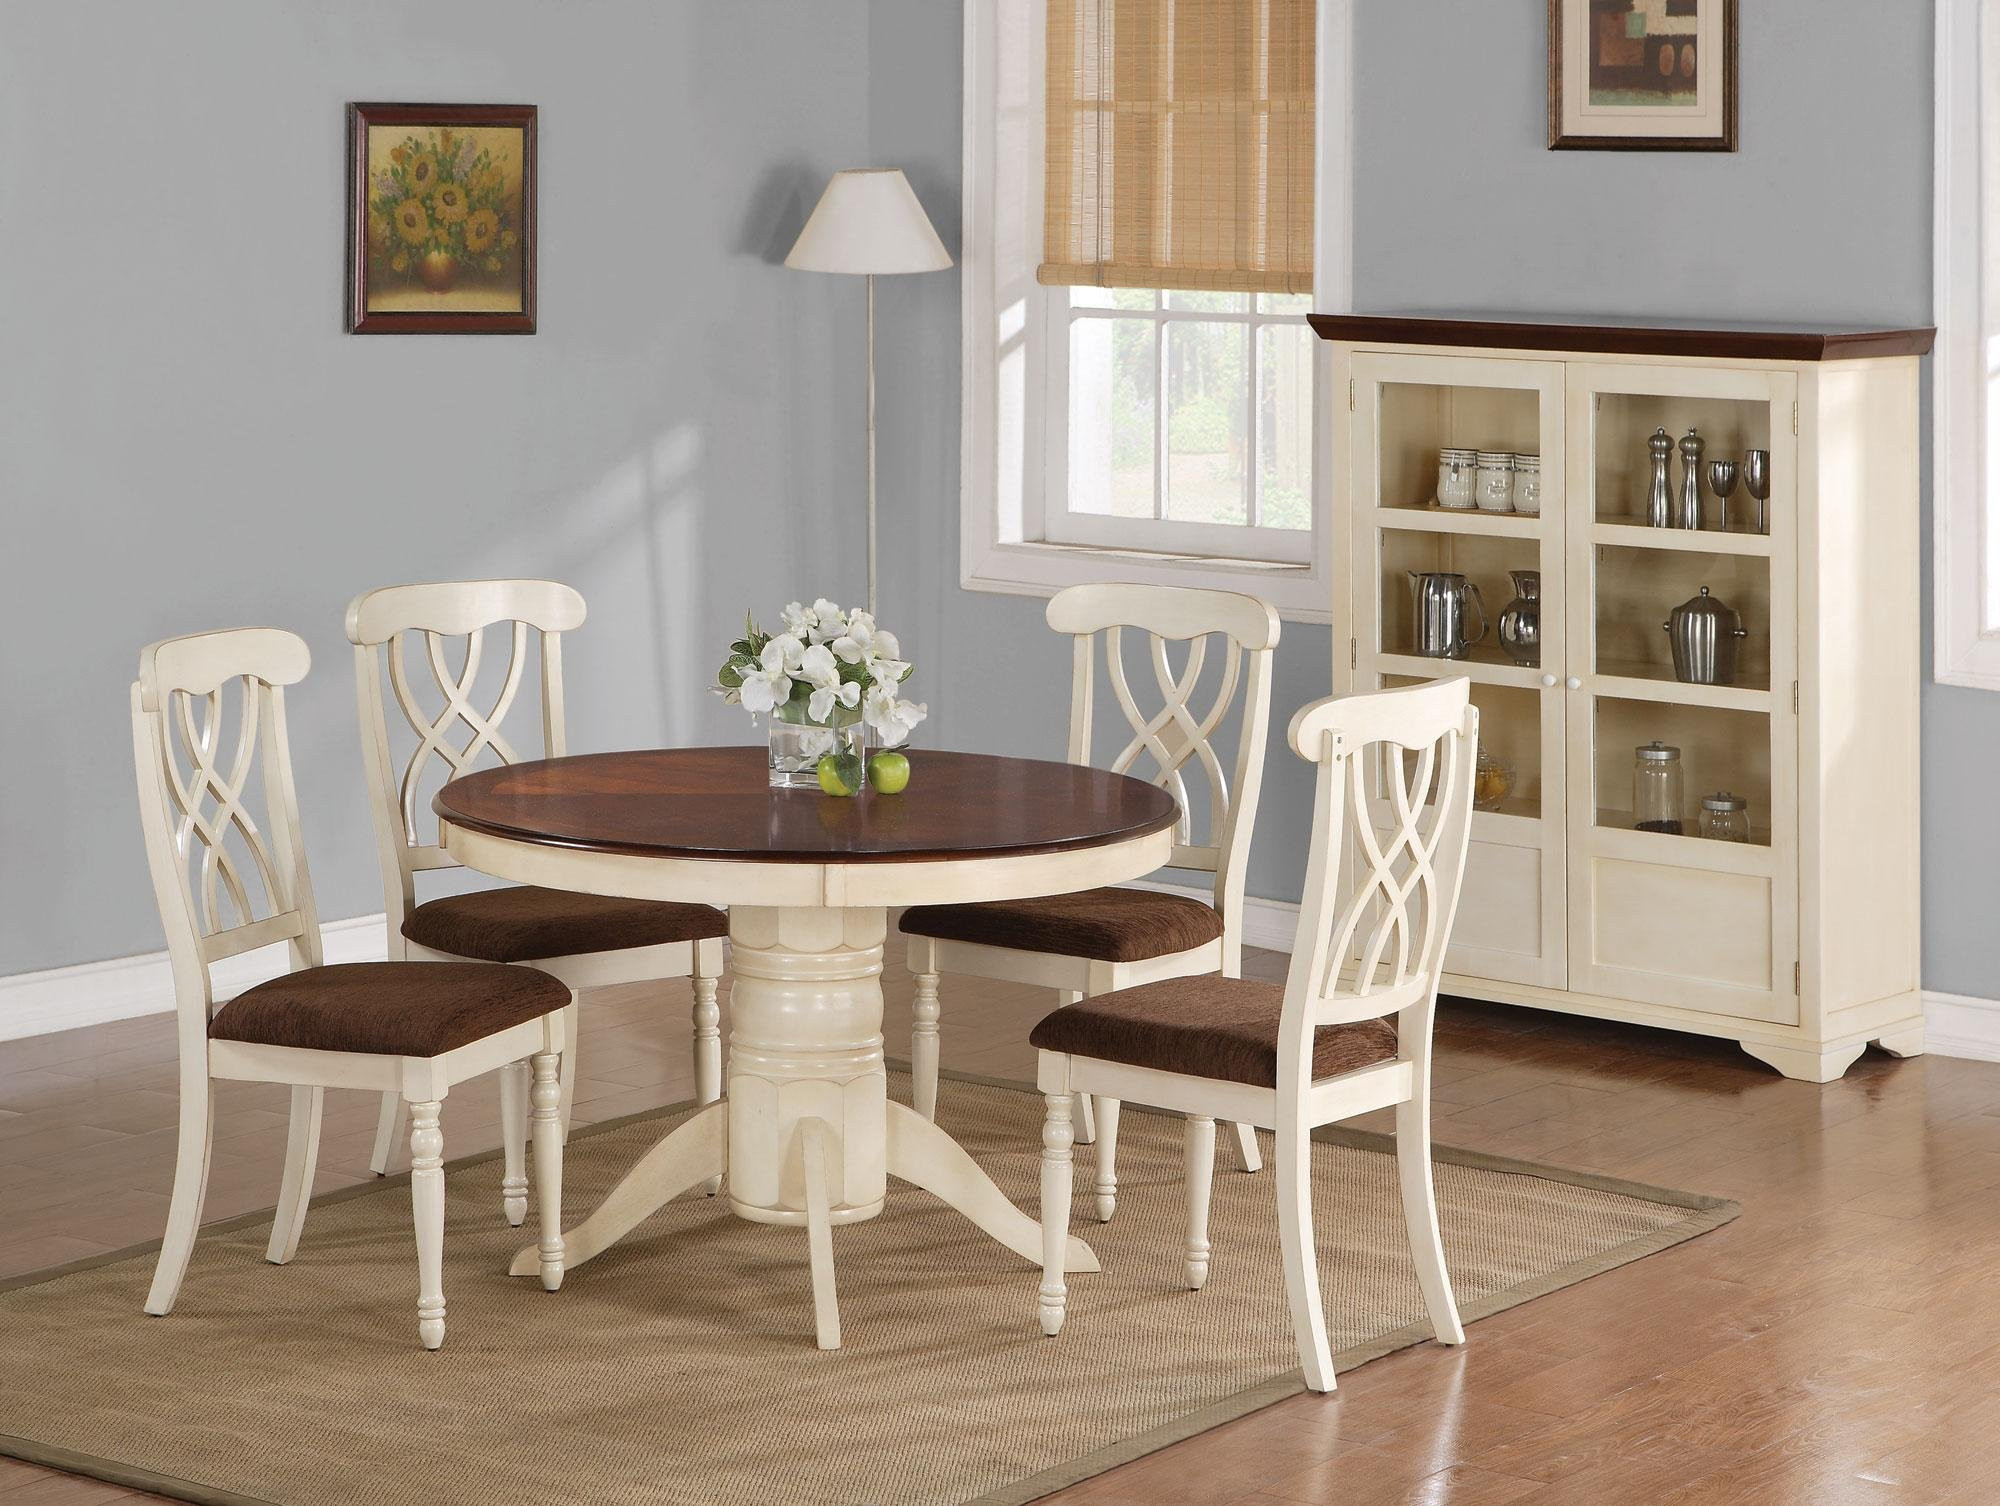 White Round Kitchen Table Sets
 Beautiful White Round Kitchen Table and Chairs